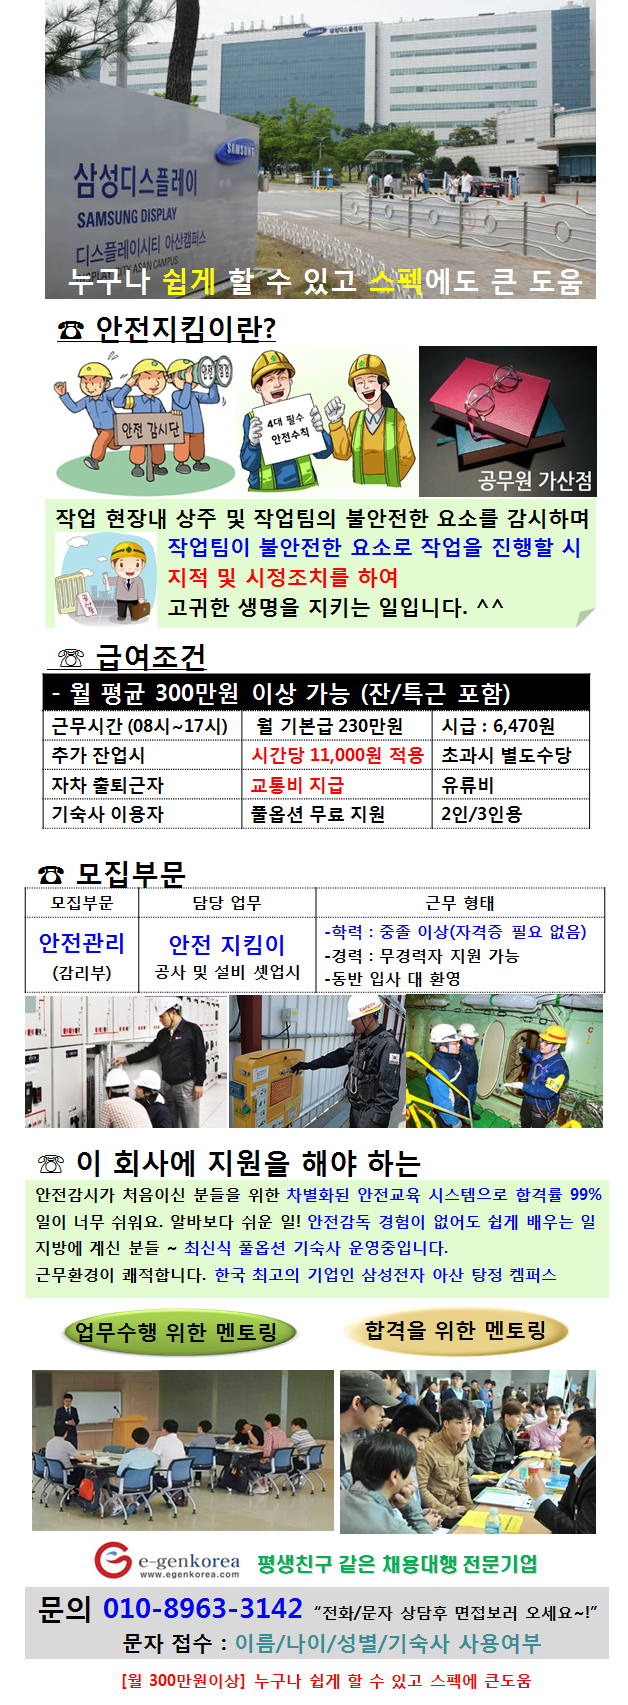 아산 삼성 사업장 안전관리 요원 신입 및 경력사원 모집